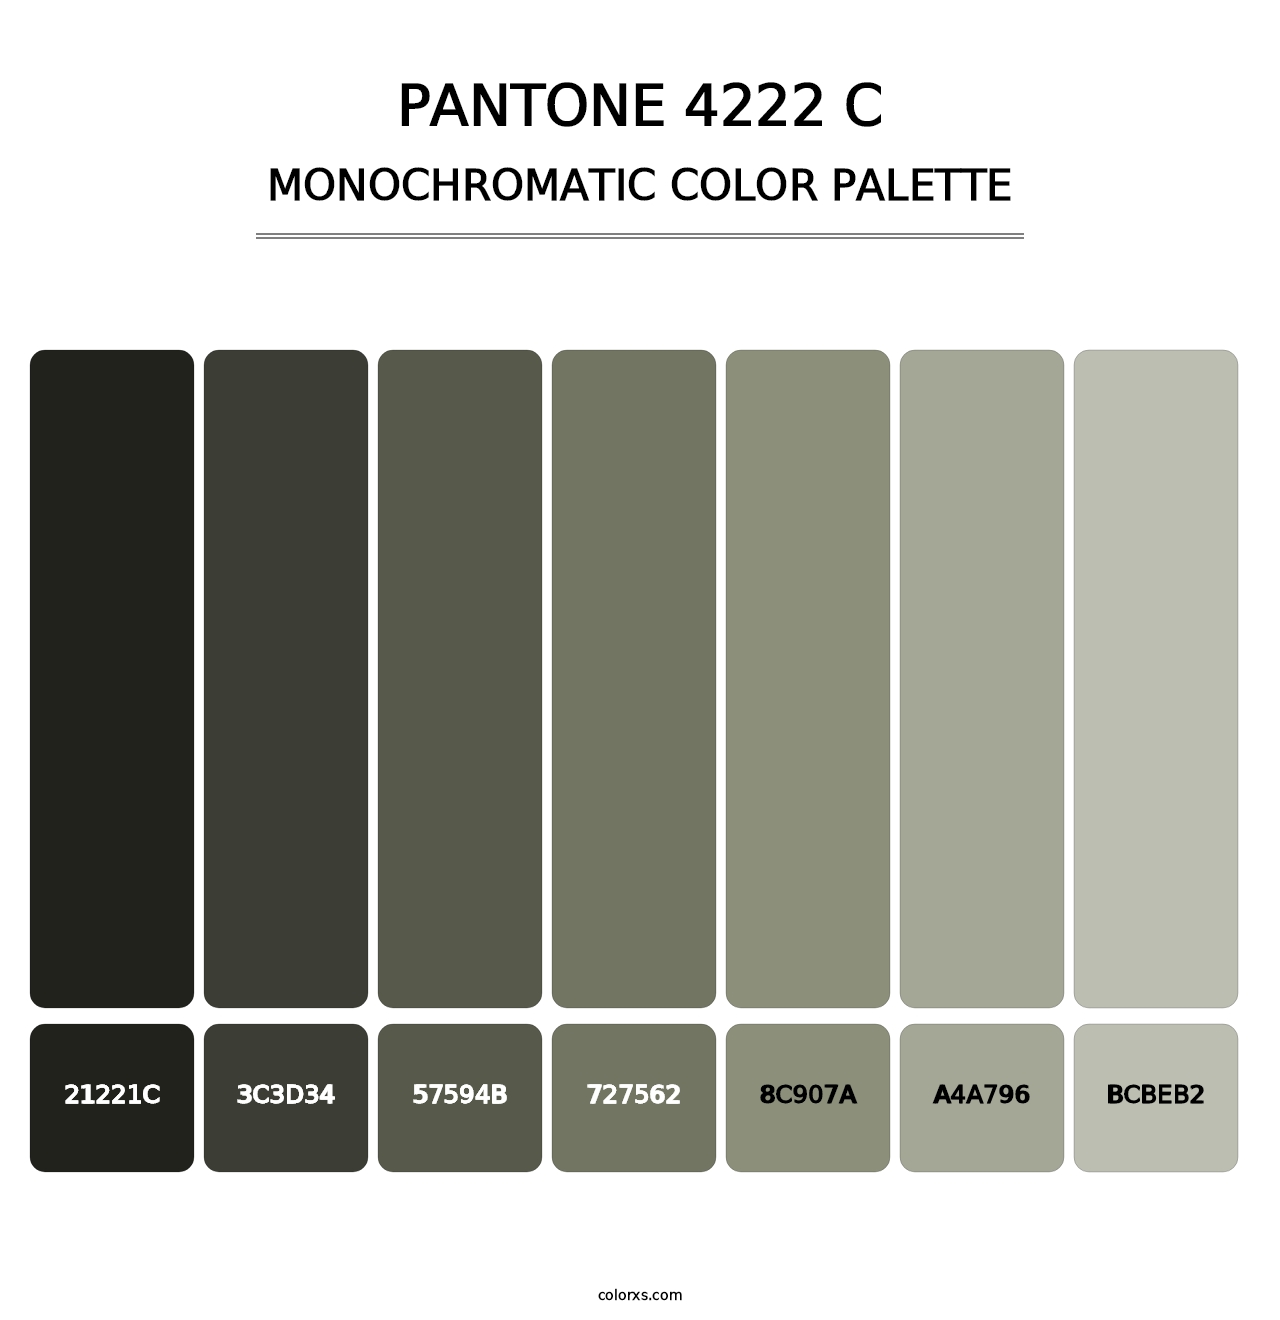 PANTONE 4222 C - Monochromatic Color Palette